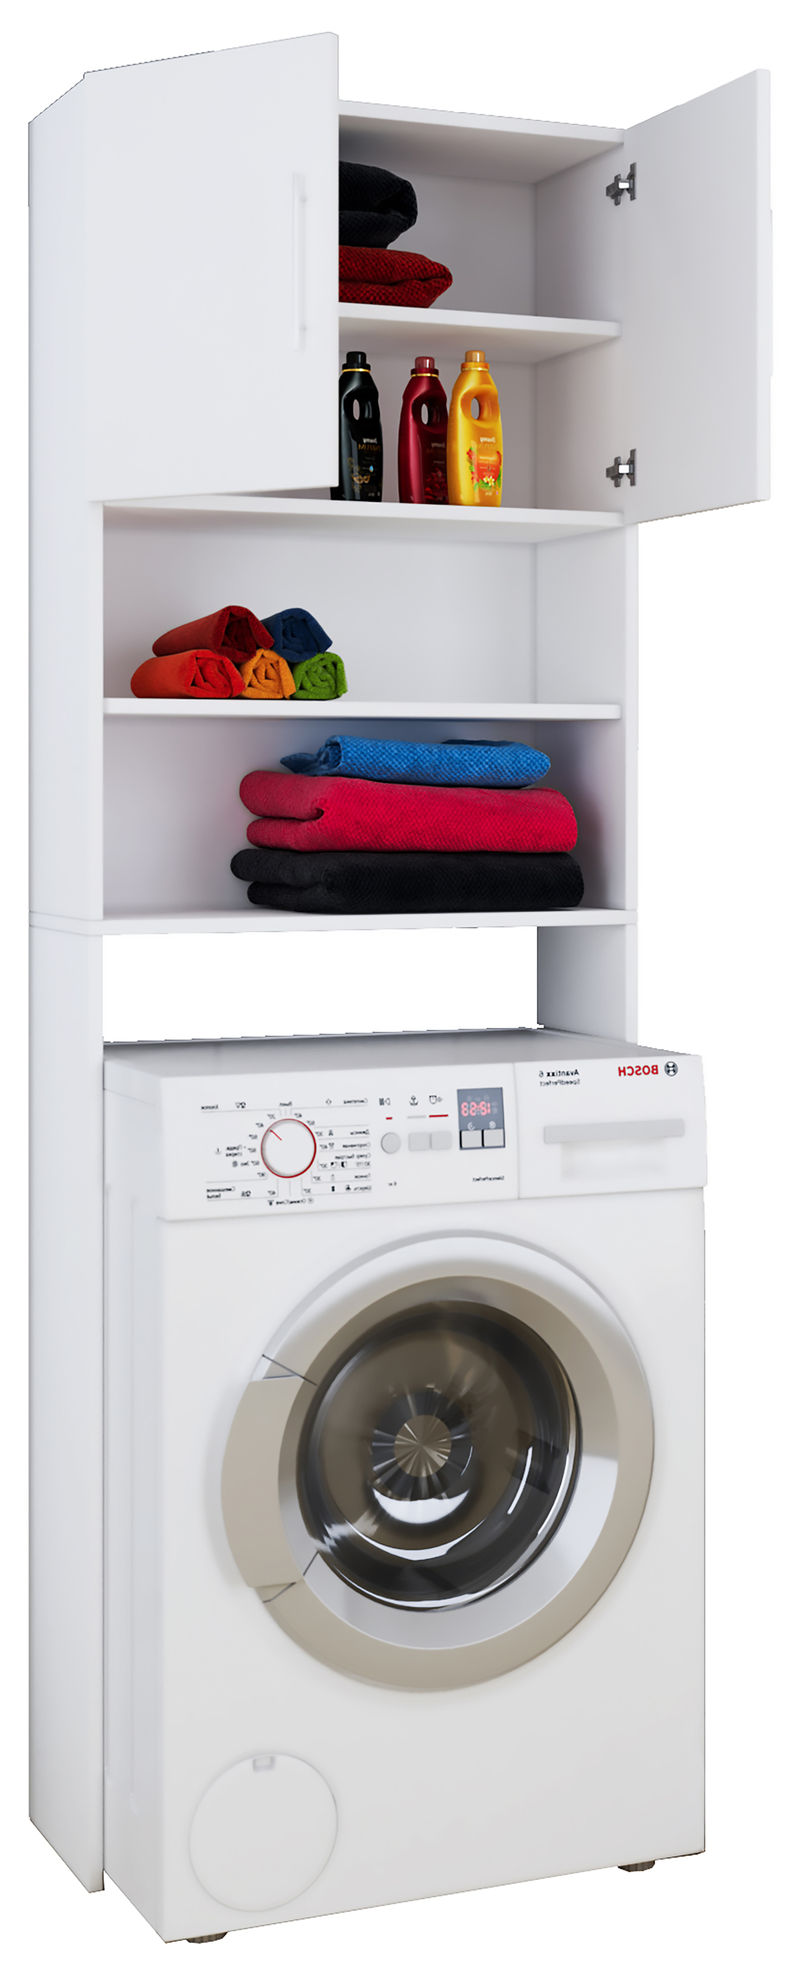 VCM Waschmaschinenschrank weiß Regal für Waschmaschinen Überbau Überschrank  Schrank Mehrzweckschrank Jutas Farbe: Weiß | Weltbild.de